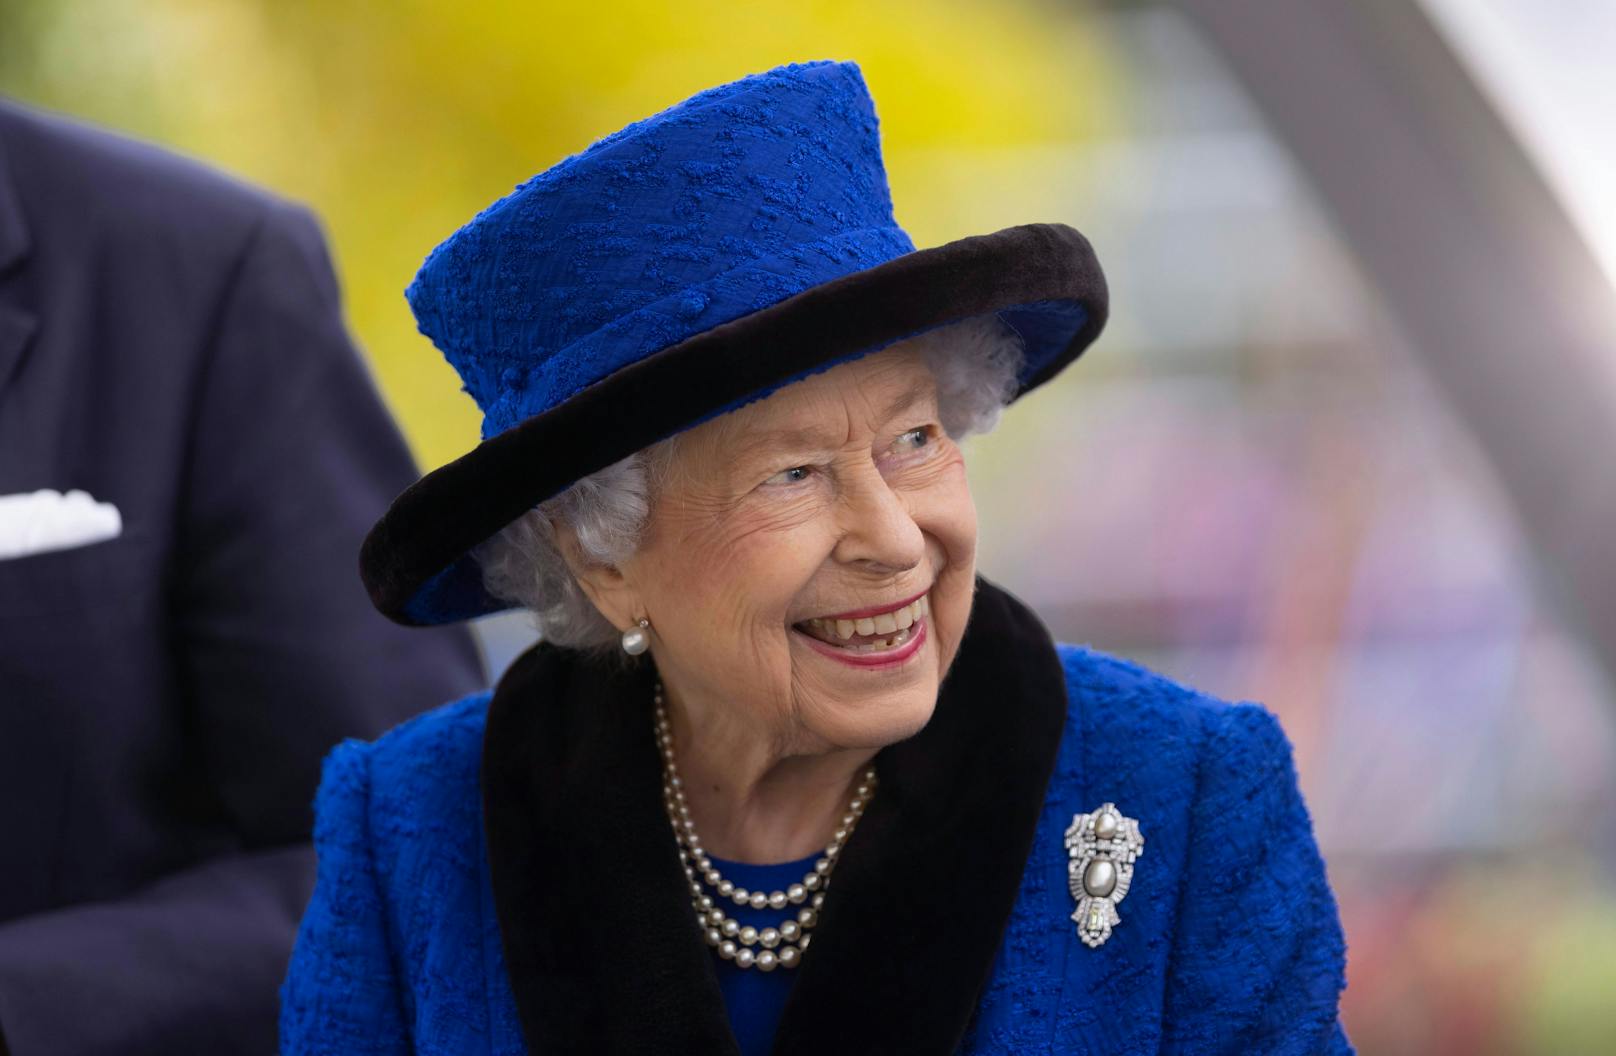 Kinos zeigen am Montag das Begräbnis der Queen